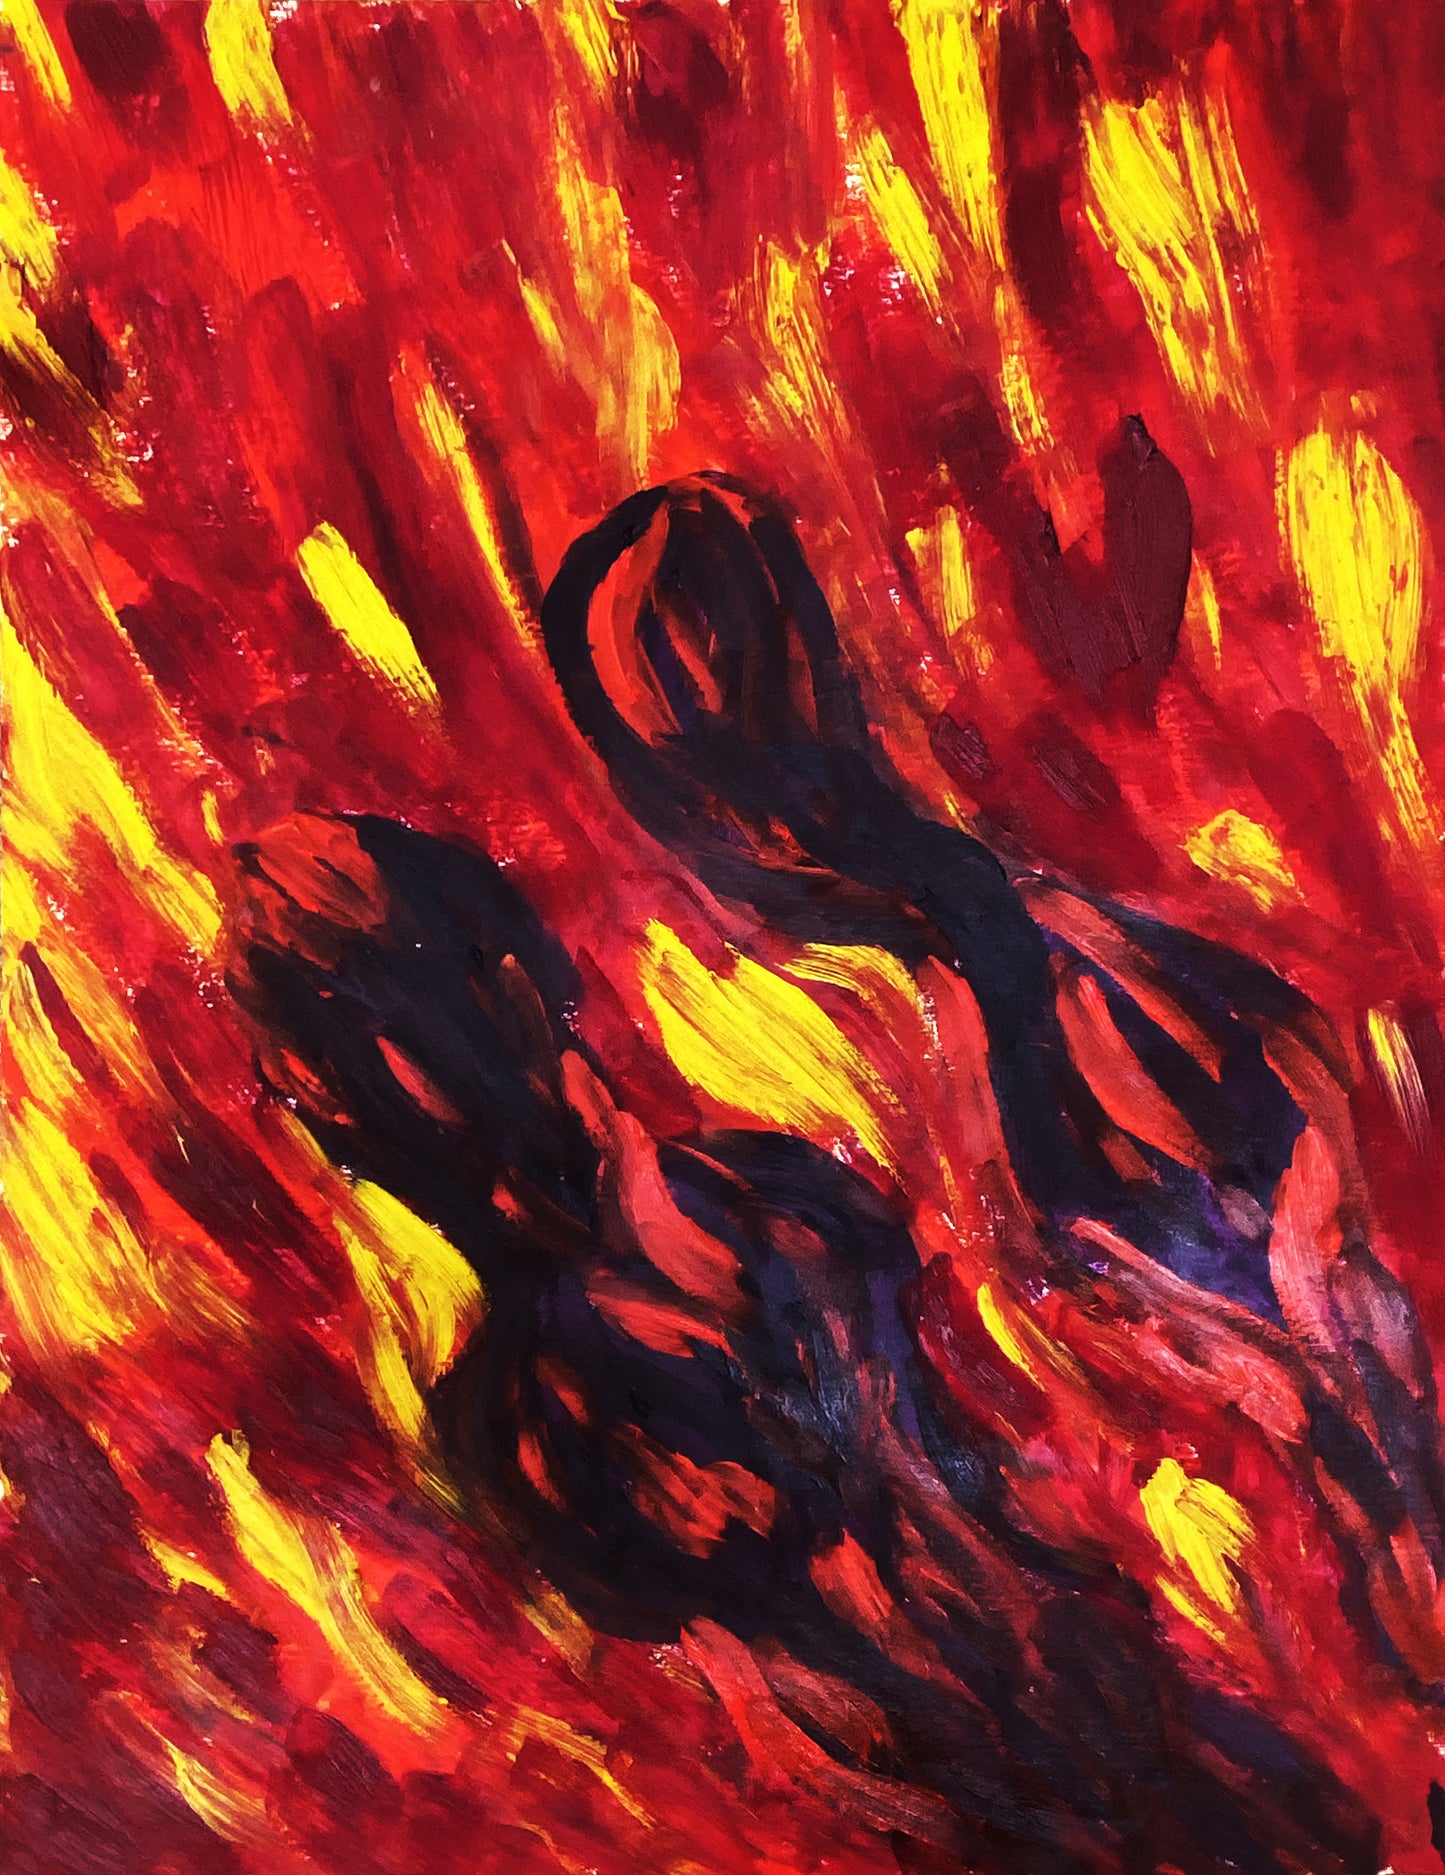 Alessandra Mattanza | HEARTS ON FIRE, 23.4 x 33.1 in - Oil on Paper.